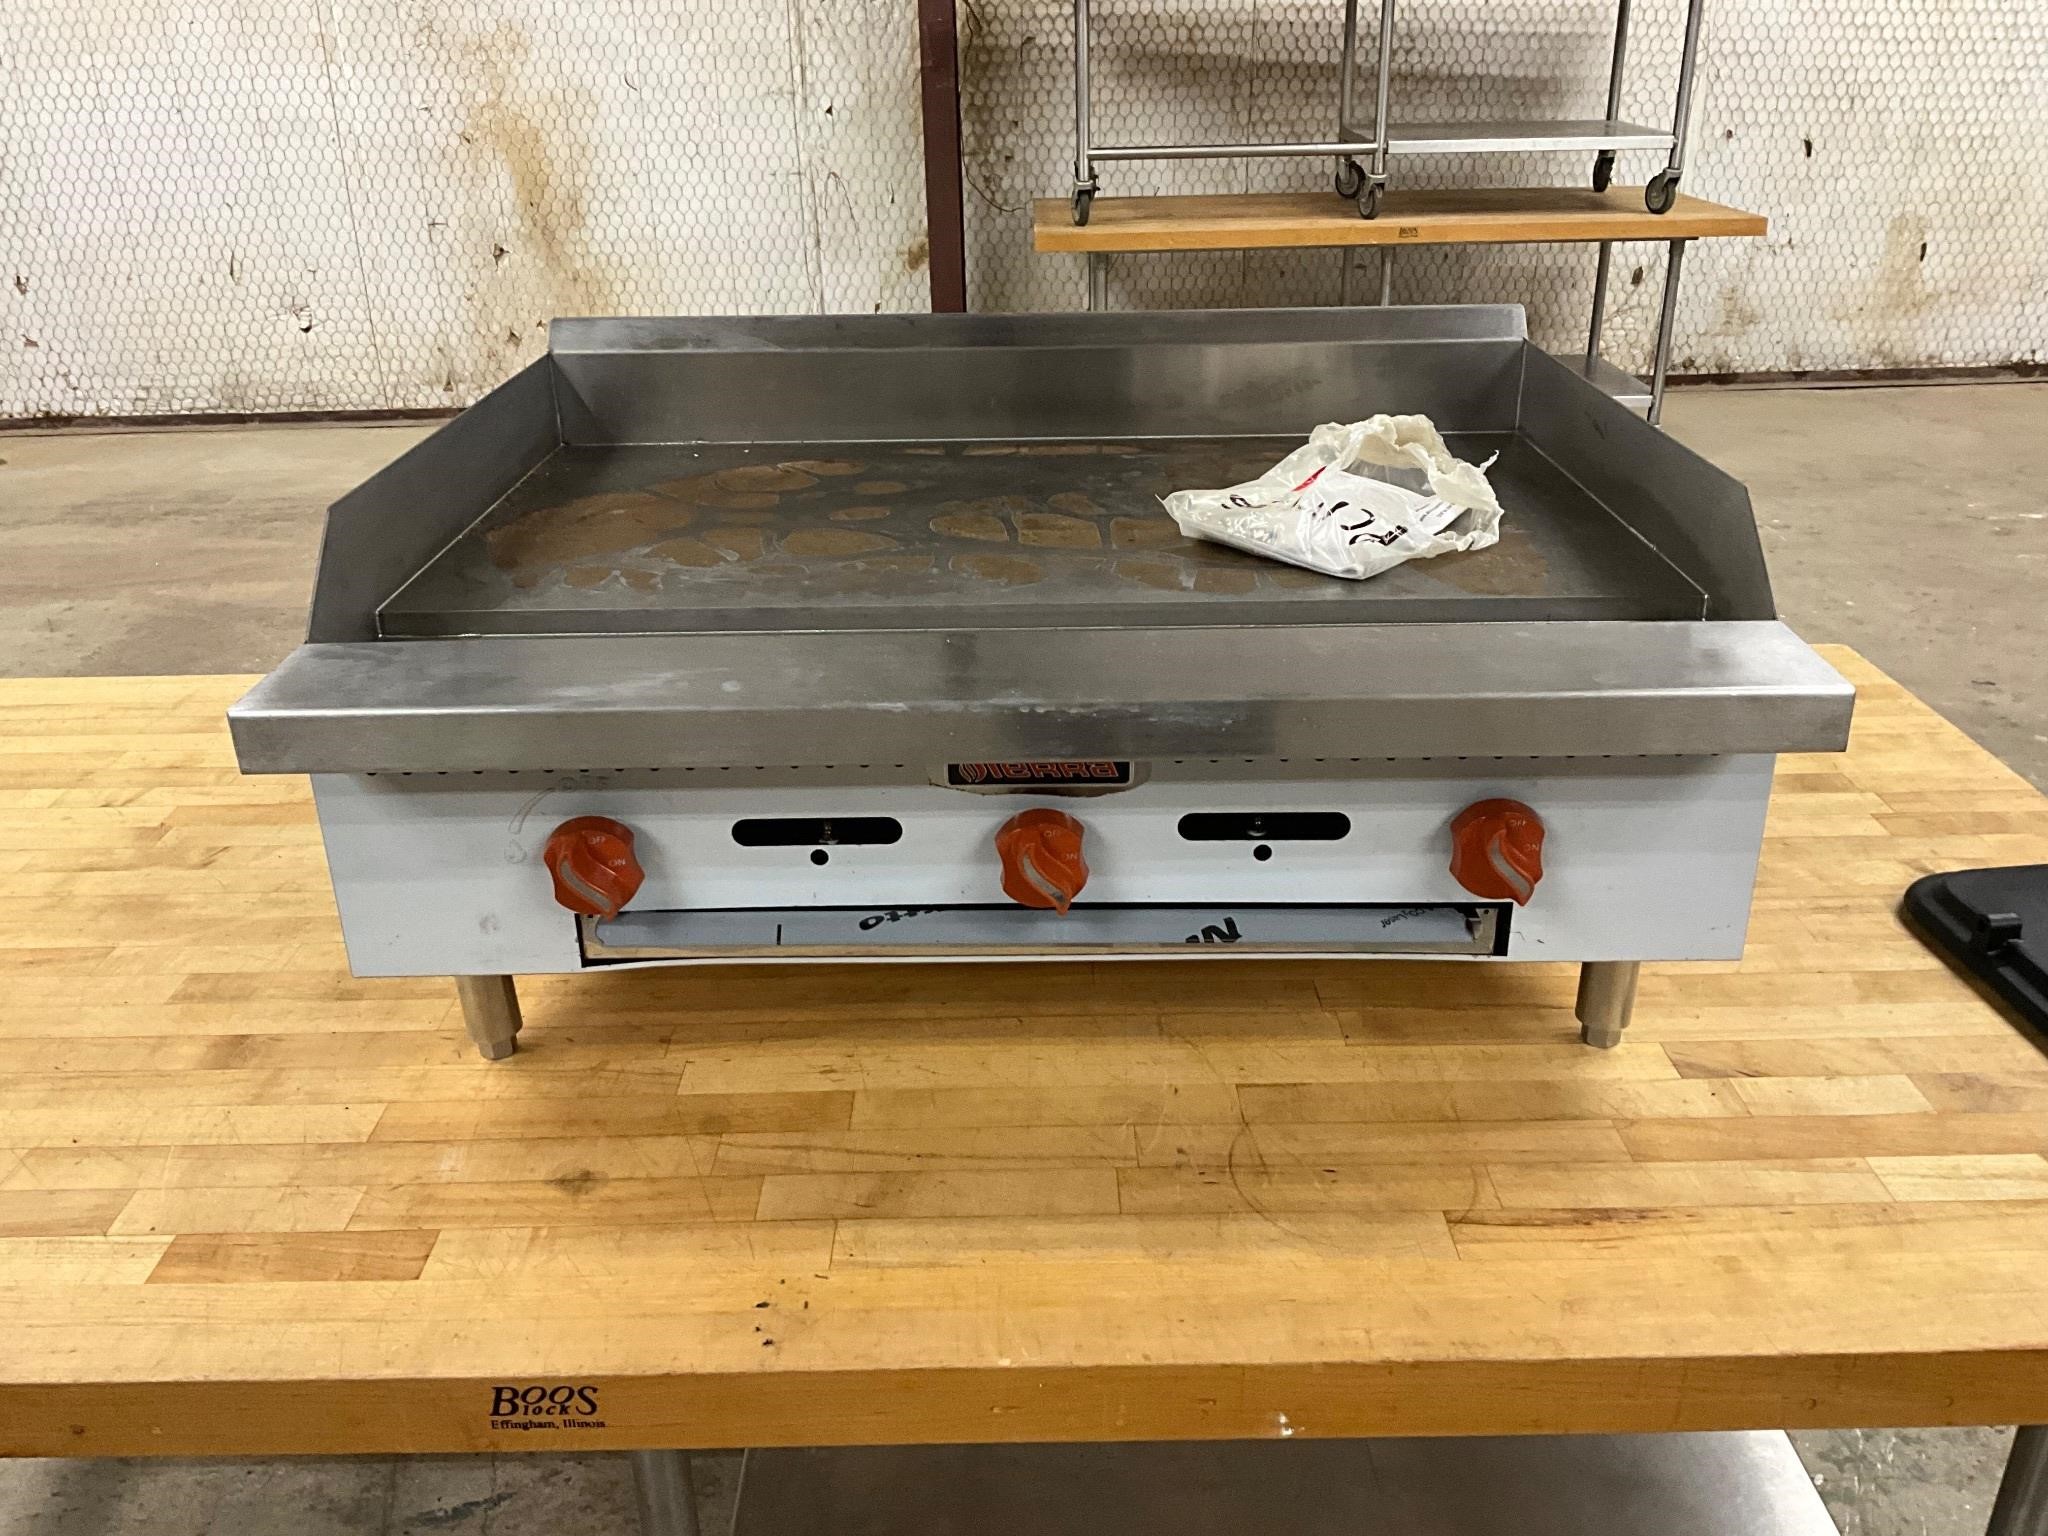 Sierra 36” gas griddle flat grill